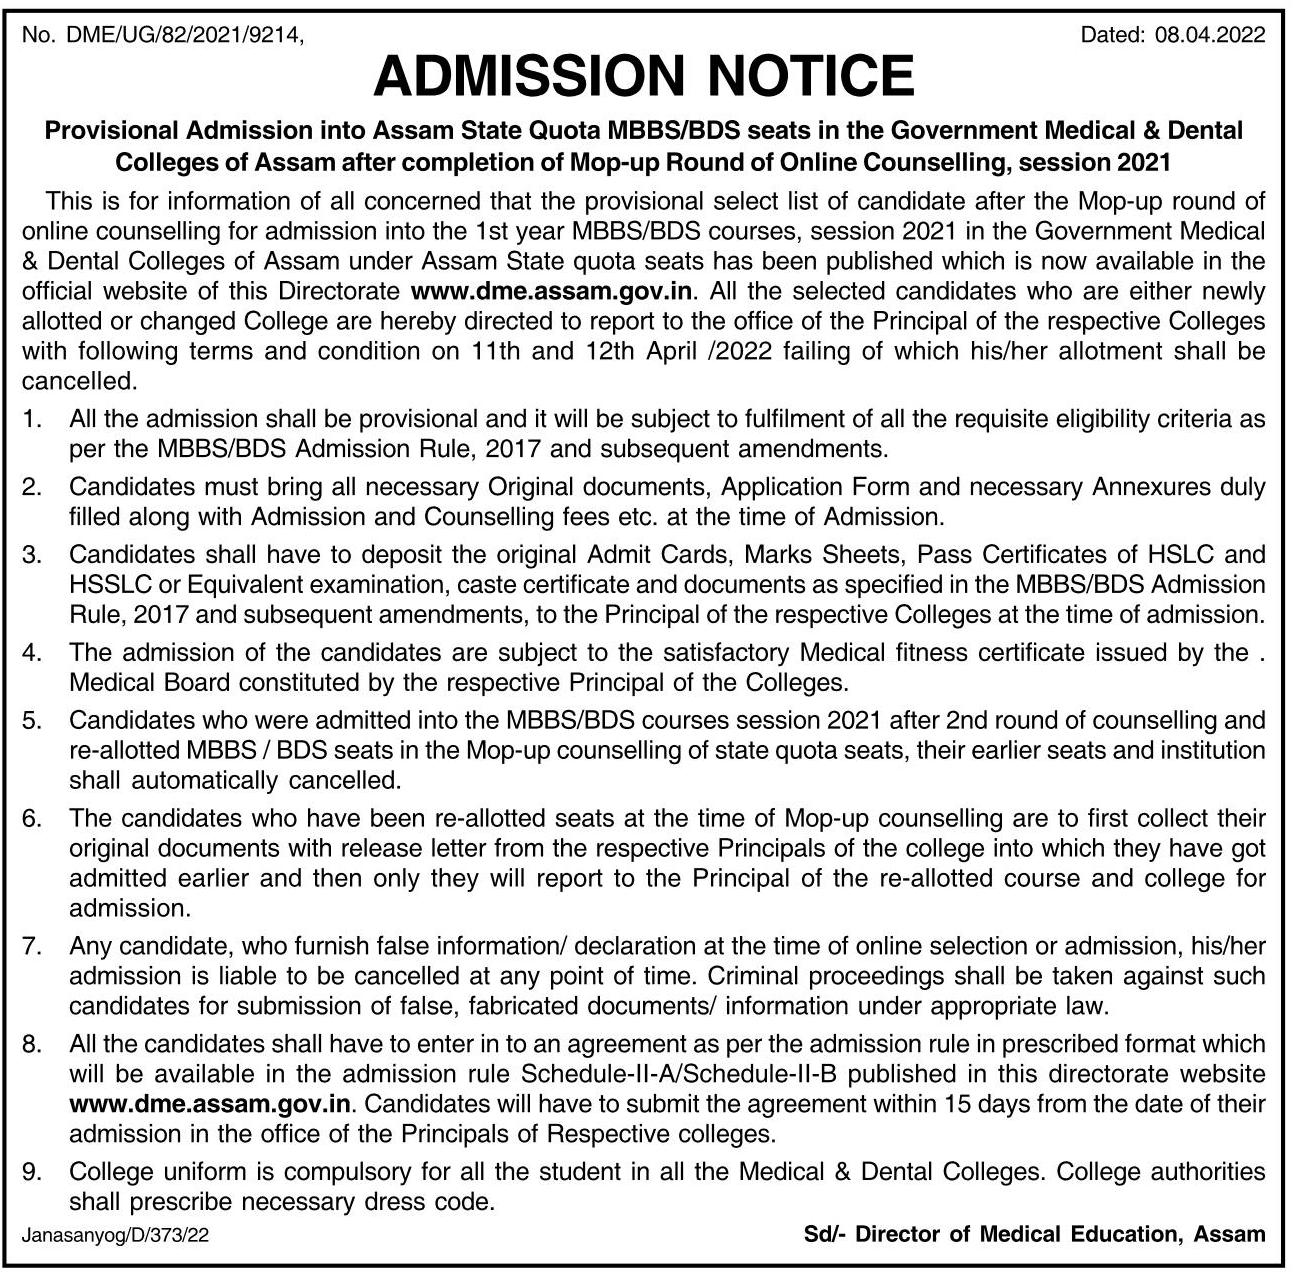 DME Assam MBBS/BDS Courses Admission